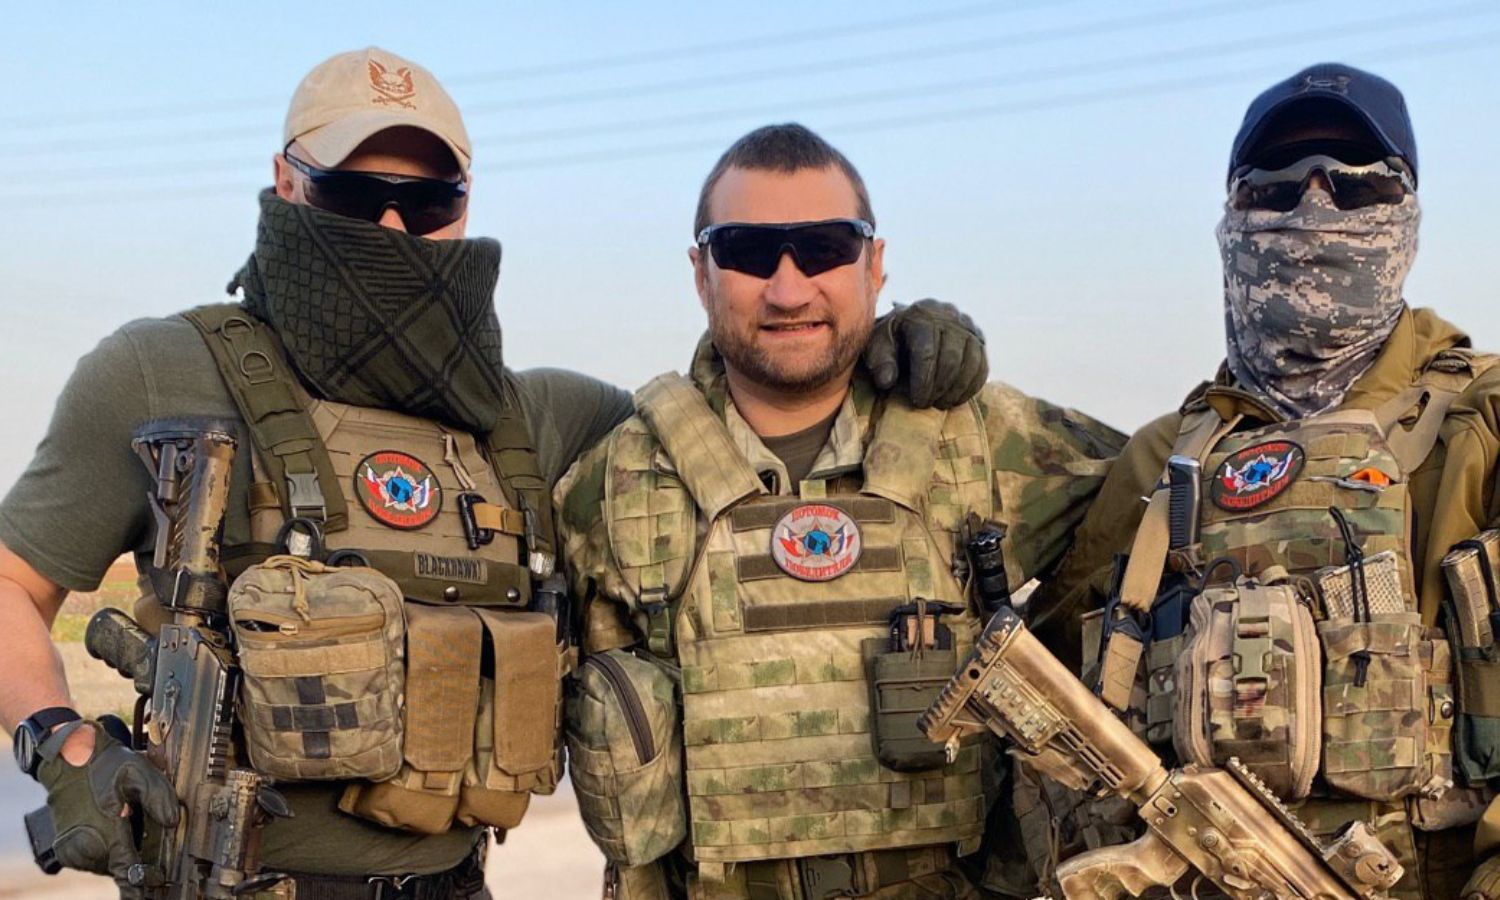 المقاتل والمراسل الحربي الروسي أوليغ بلوخين ومقاتلين روس في مدينة سراقب بريف إدلب الجنوبي الشرقي- 11 من نيسان 2020 (قناة المراسل في "تلجرام")